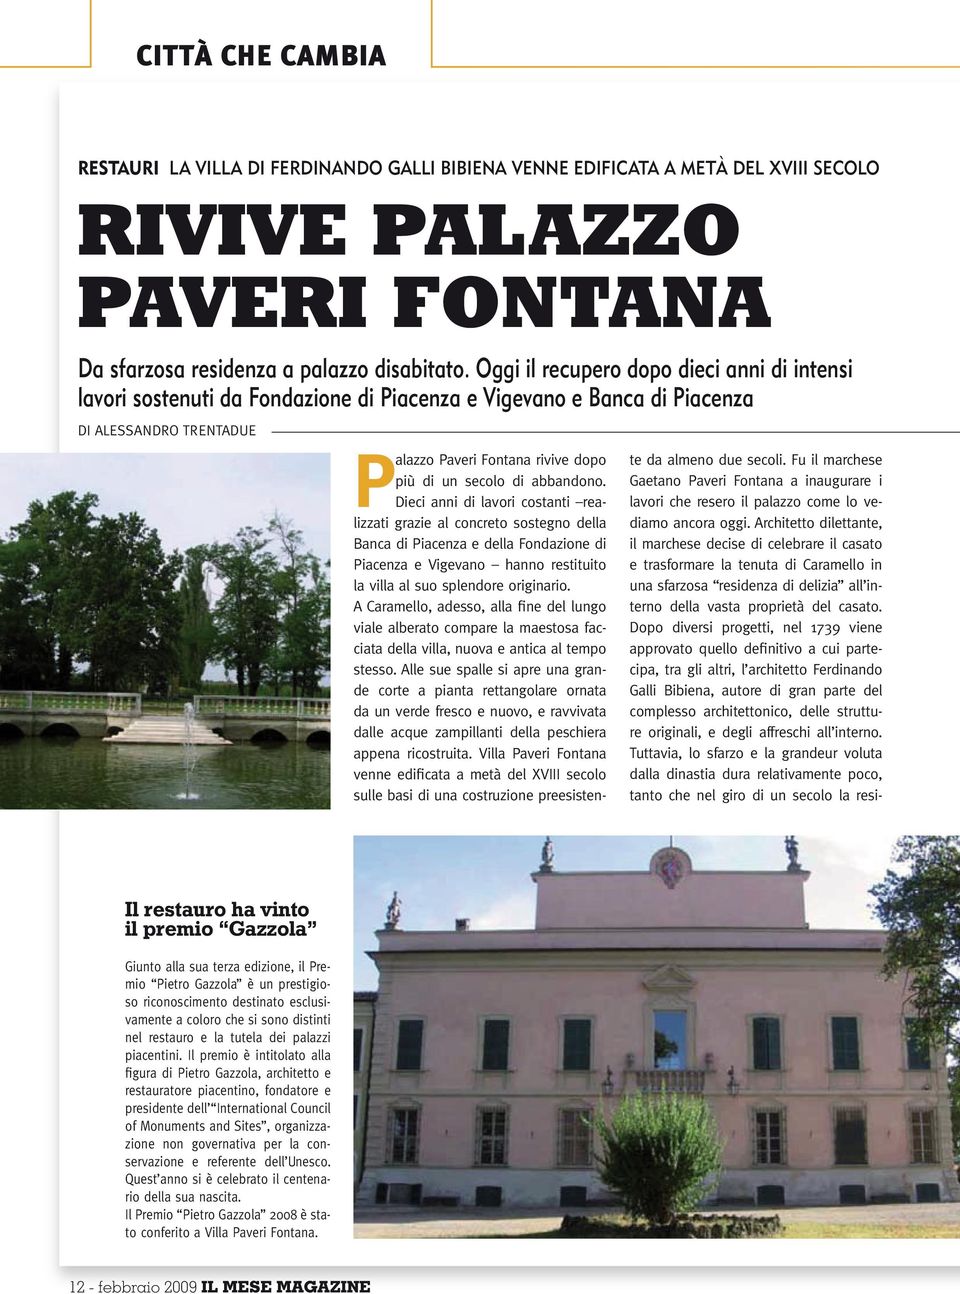 abbandono. Dieci anni di lavori costanti realizzati grazie al concreto sostegno della Banca di Piacenza e della Fondazione di Piacenza e Vigevano hanno restituito la villa al suo splendore originario.